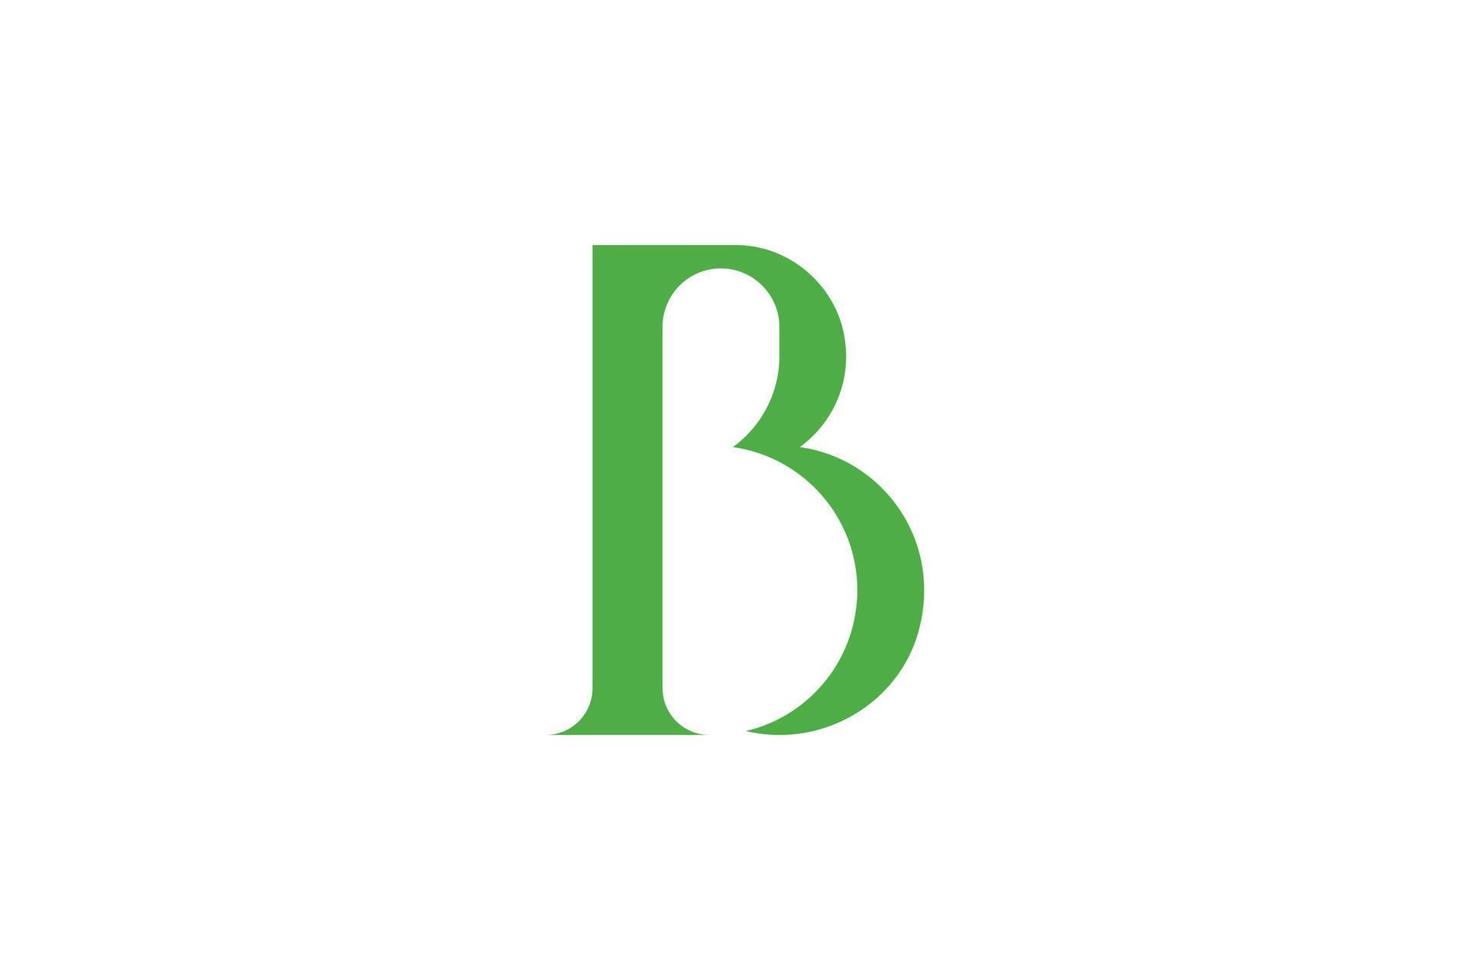 b brief eerste logo vector